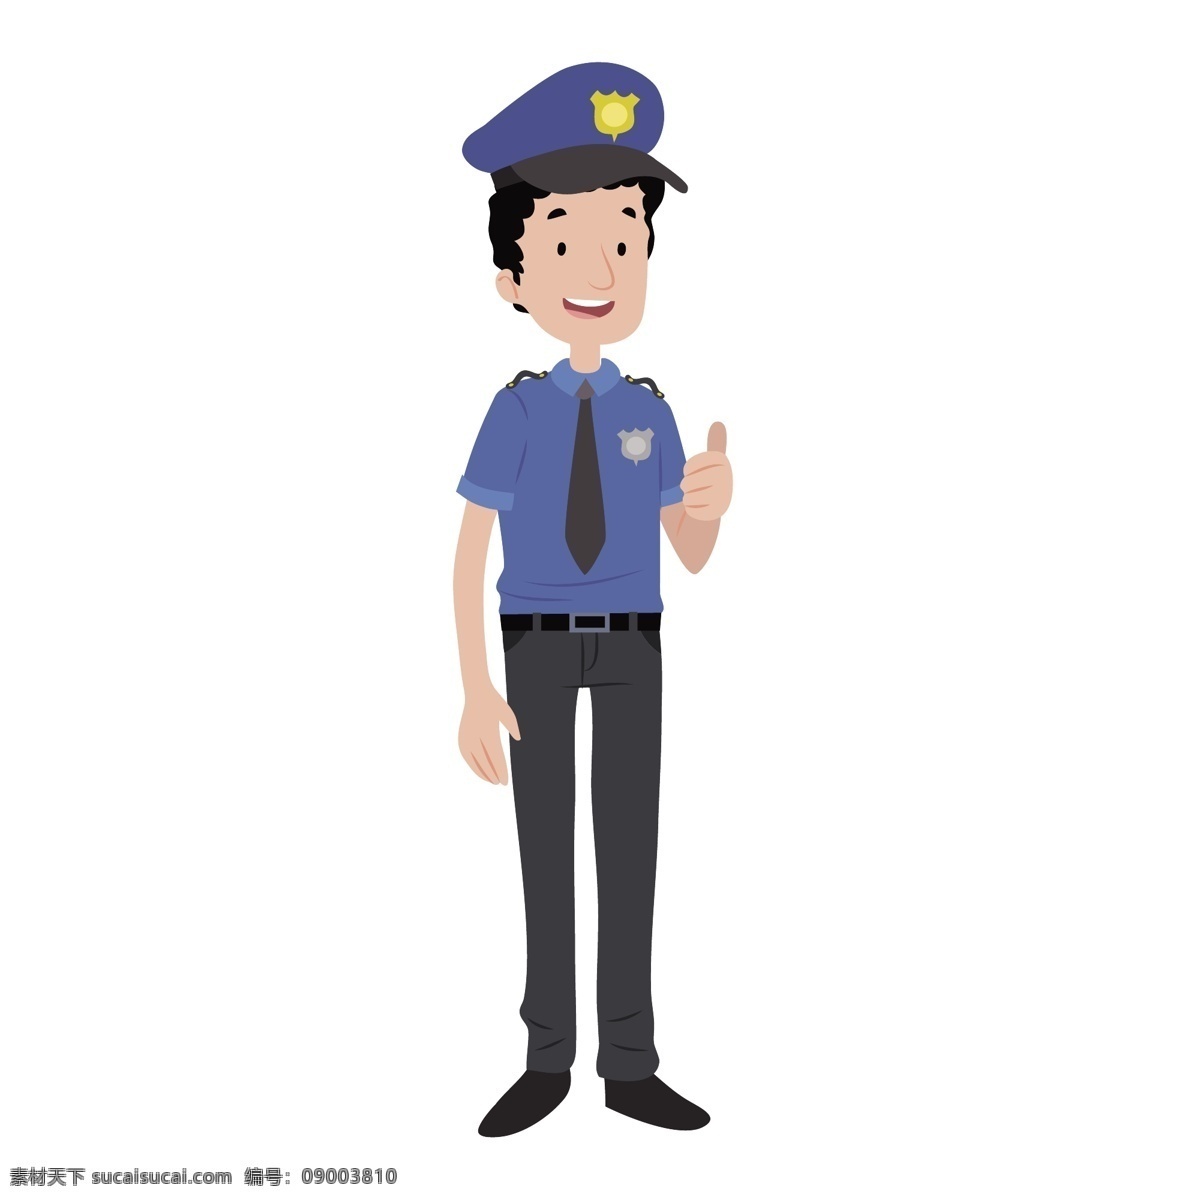 卡通 警察 矢量 卡通的警察 可爱 可爱警察 小清新 小清新警察 蓝色 蓝色制服 巡警